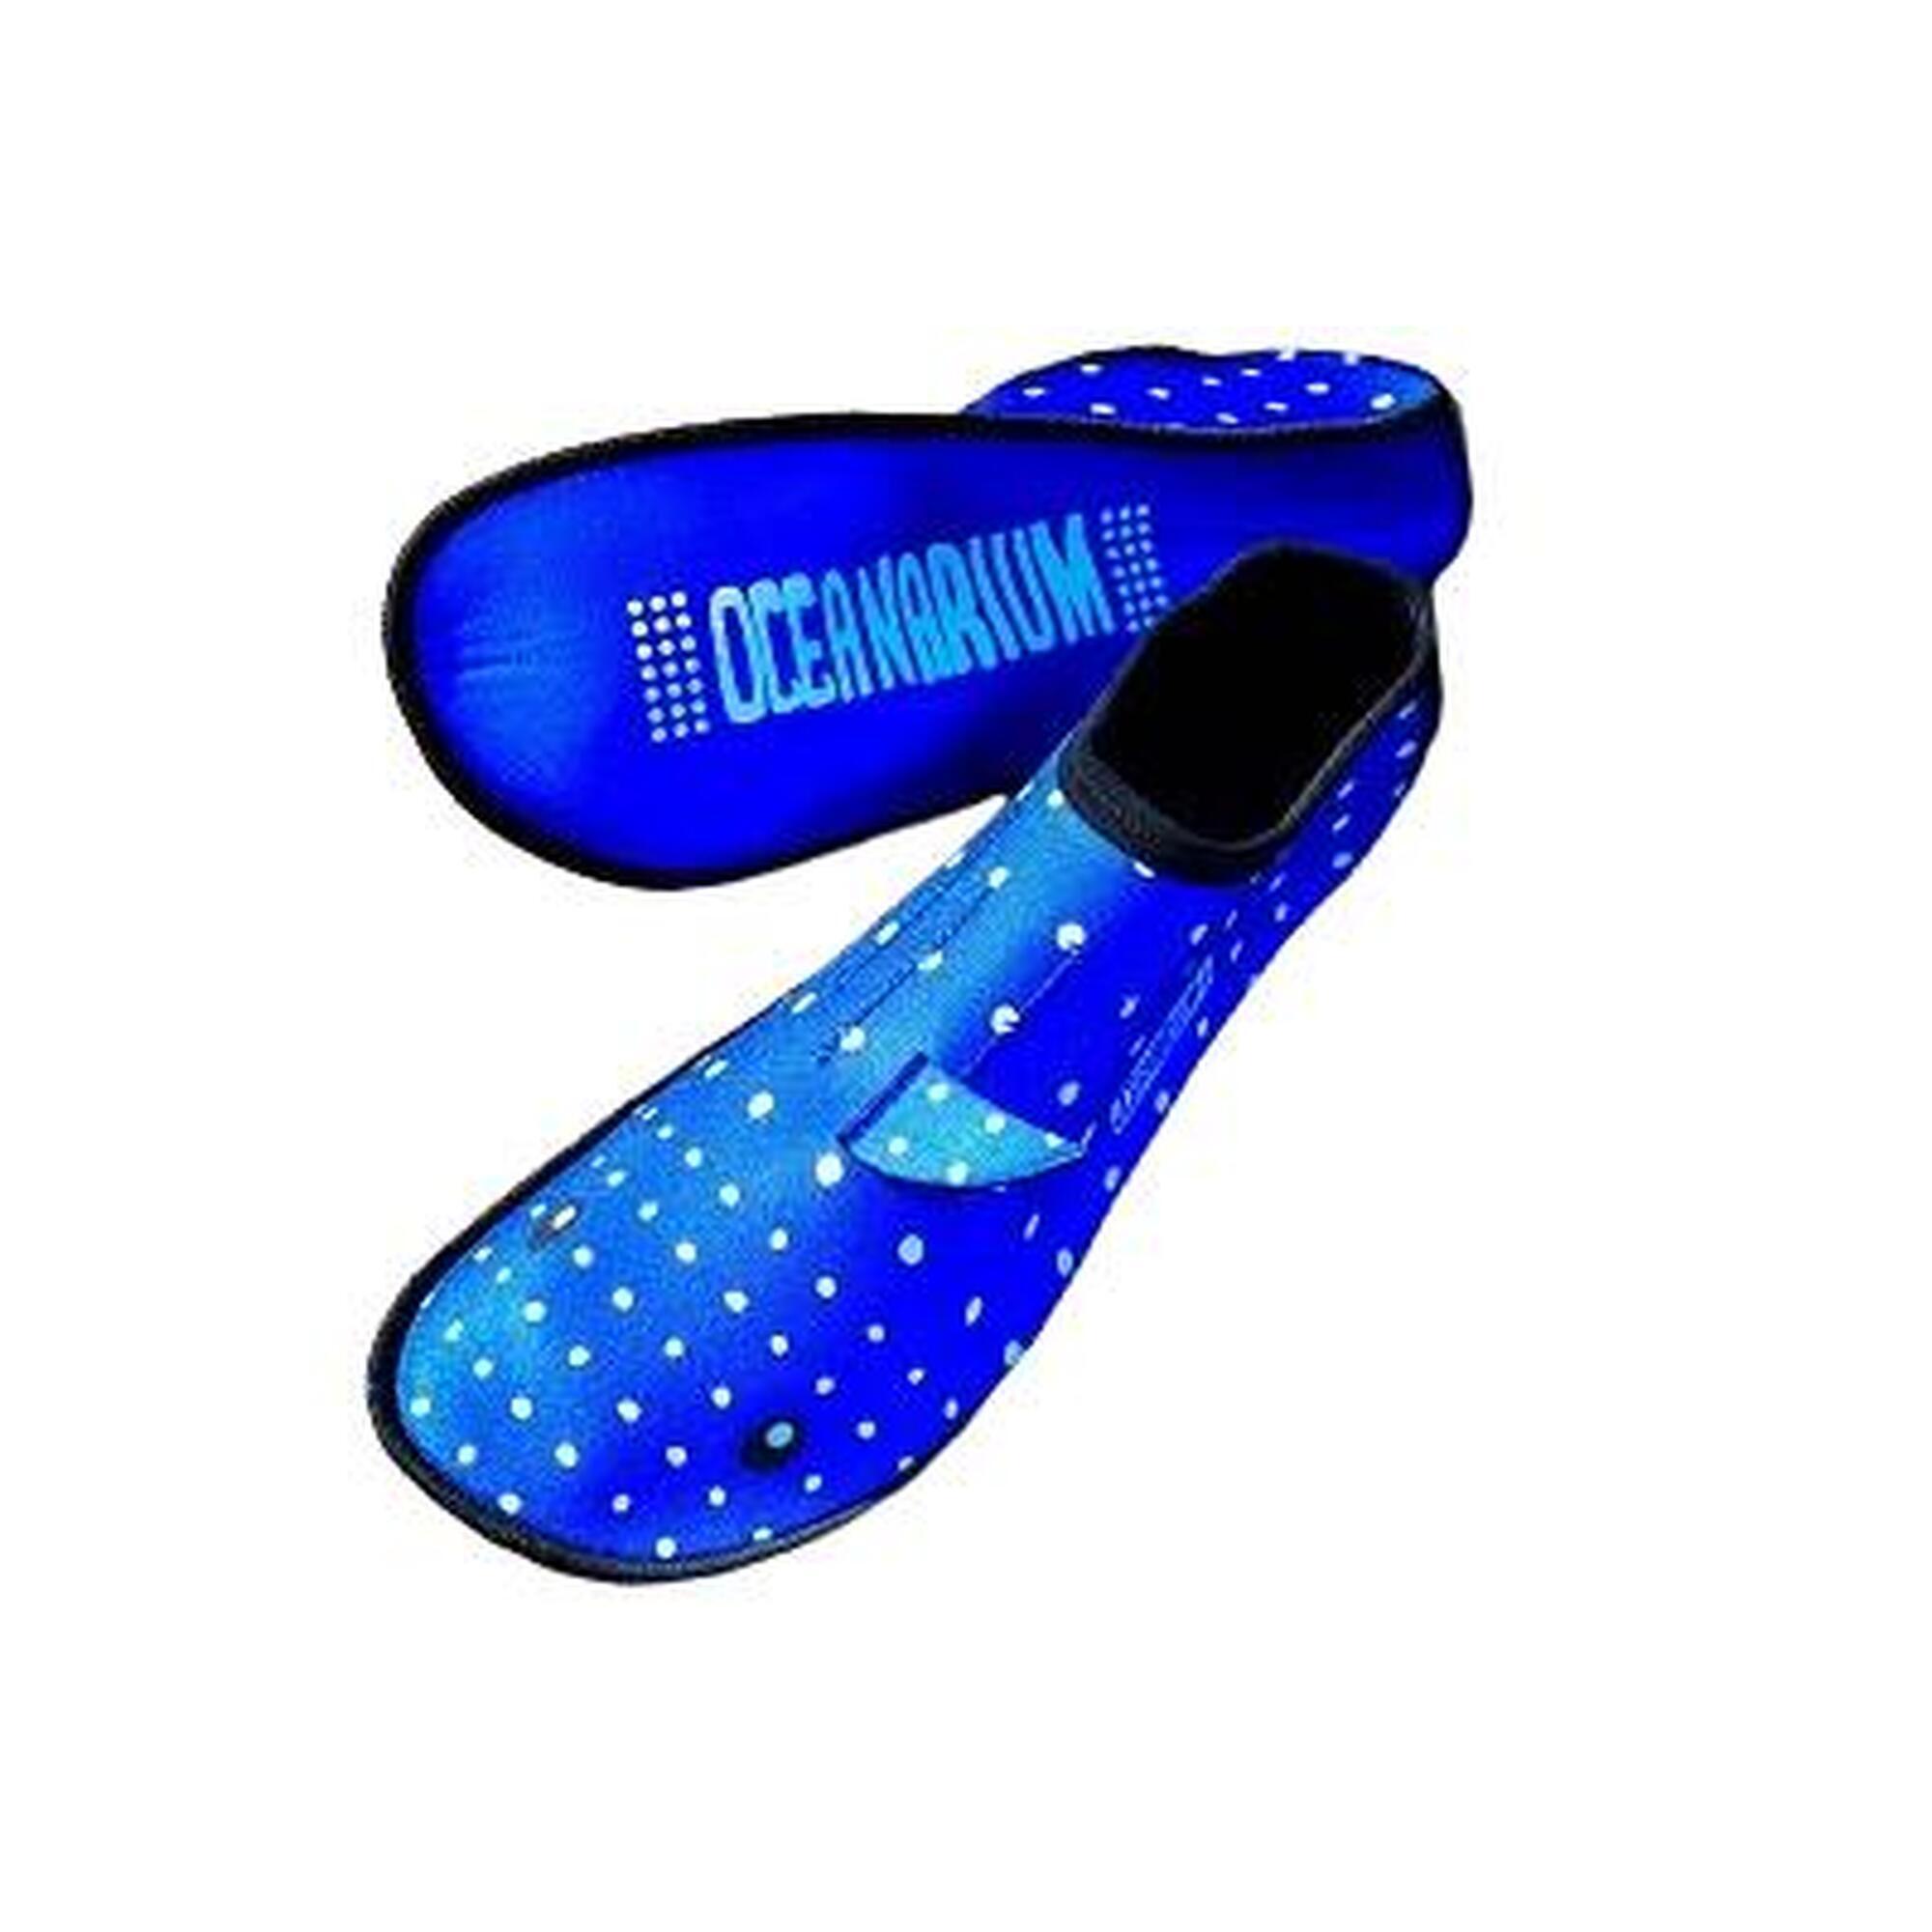 2 毫米氯丁橡膠襪子 (whaleshark) - 藍色